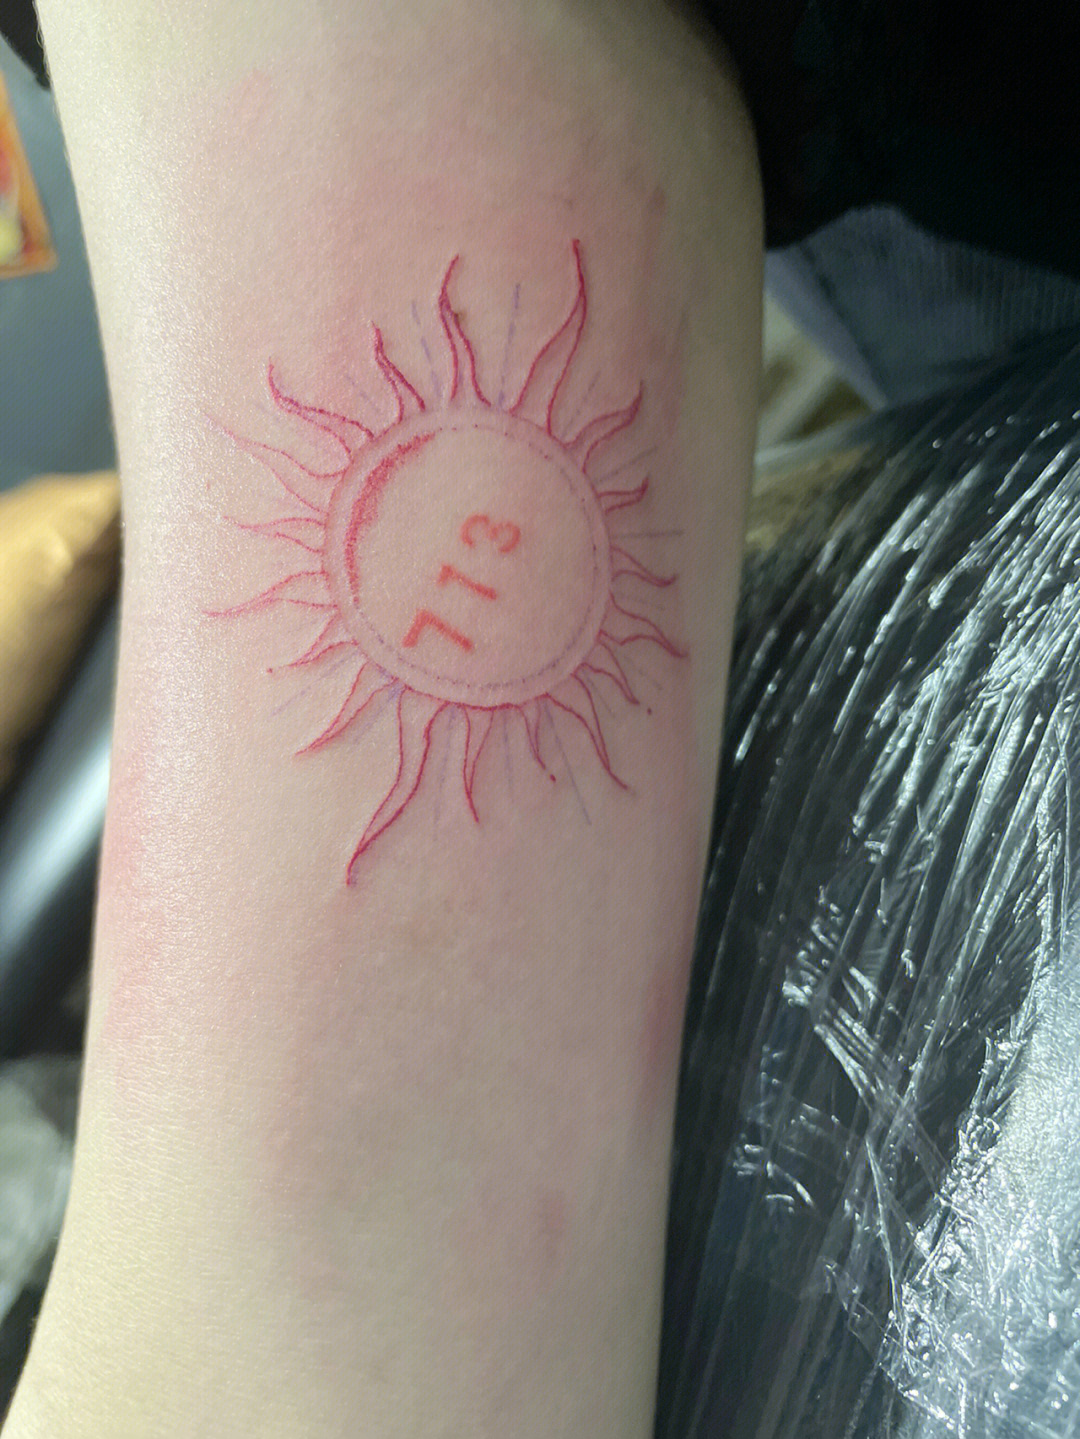 太阳纹身的寓意图片